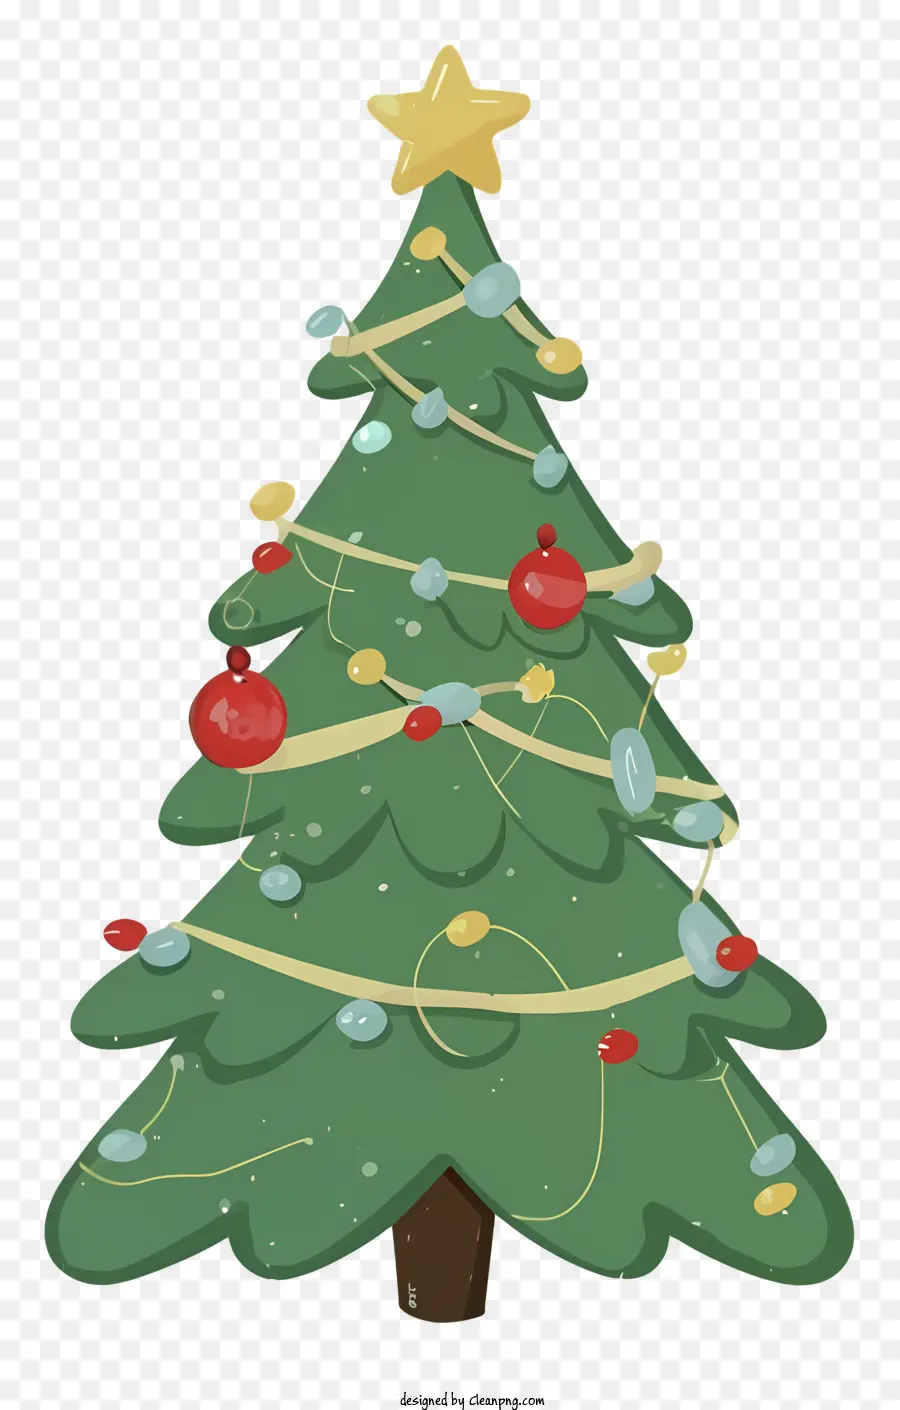 Desenho Animado Da árvore De Natal，Imagem Da árvore De Natal PNG